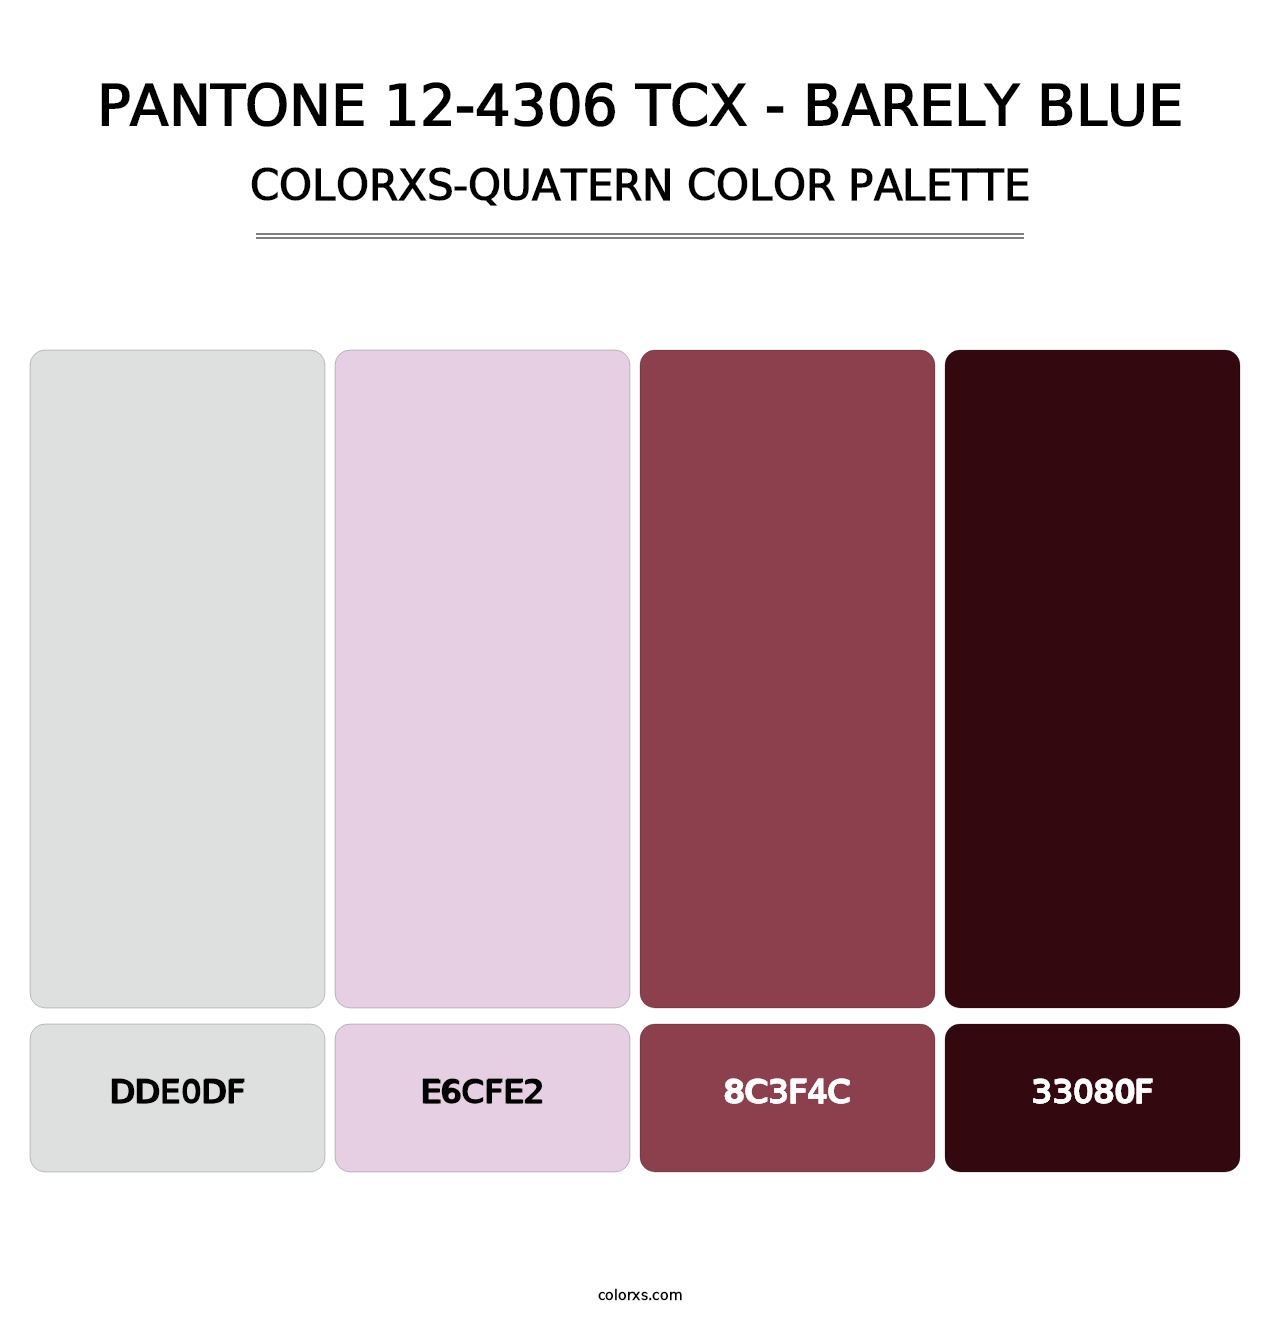 PANTONE 12-4306 TCX - Barely Blue - Colorxs Quatern Palette